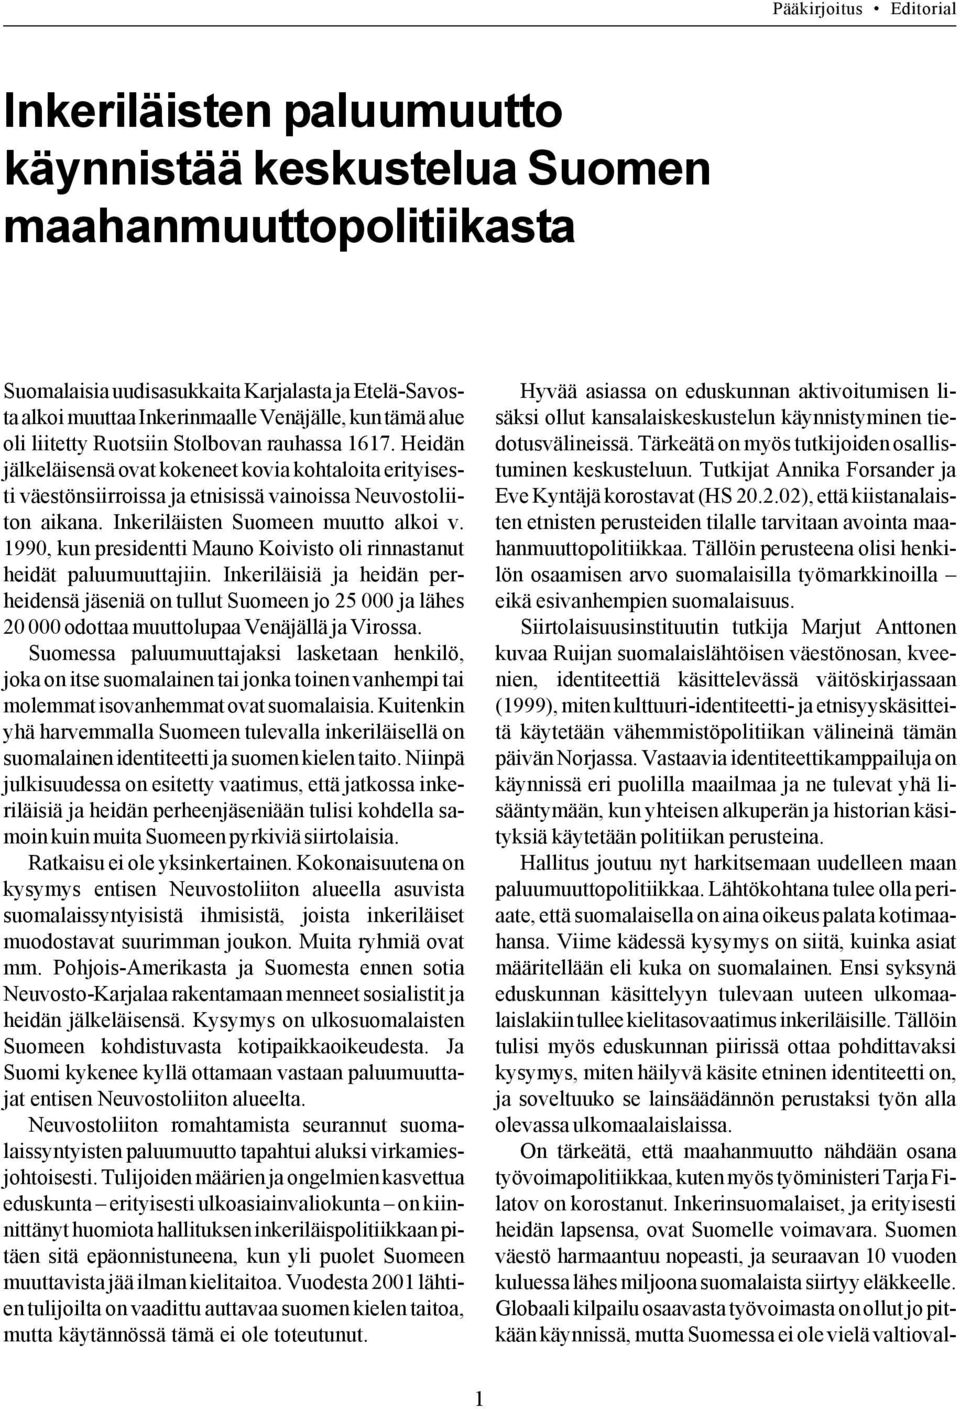 Inkeriläisten Suomeen muutto alkoi v. 1990, kun presidentti Mauno Koivisto oli rinnastanut heidät paluumuuttajiin.